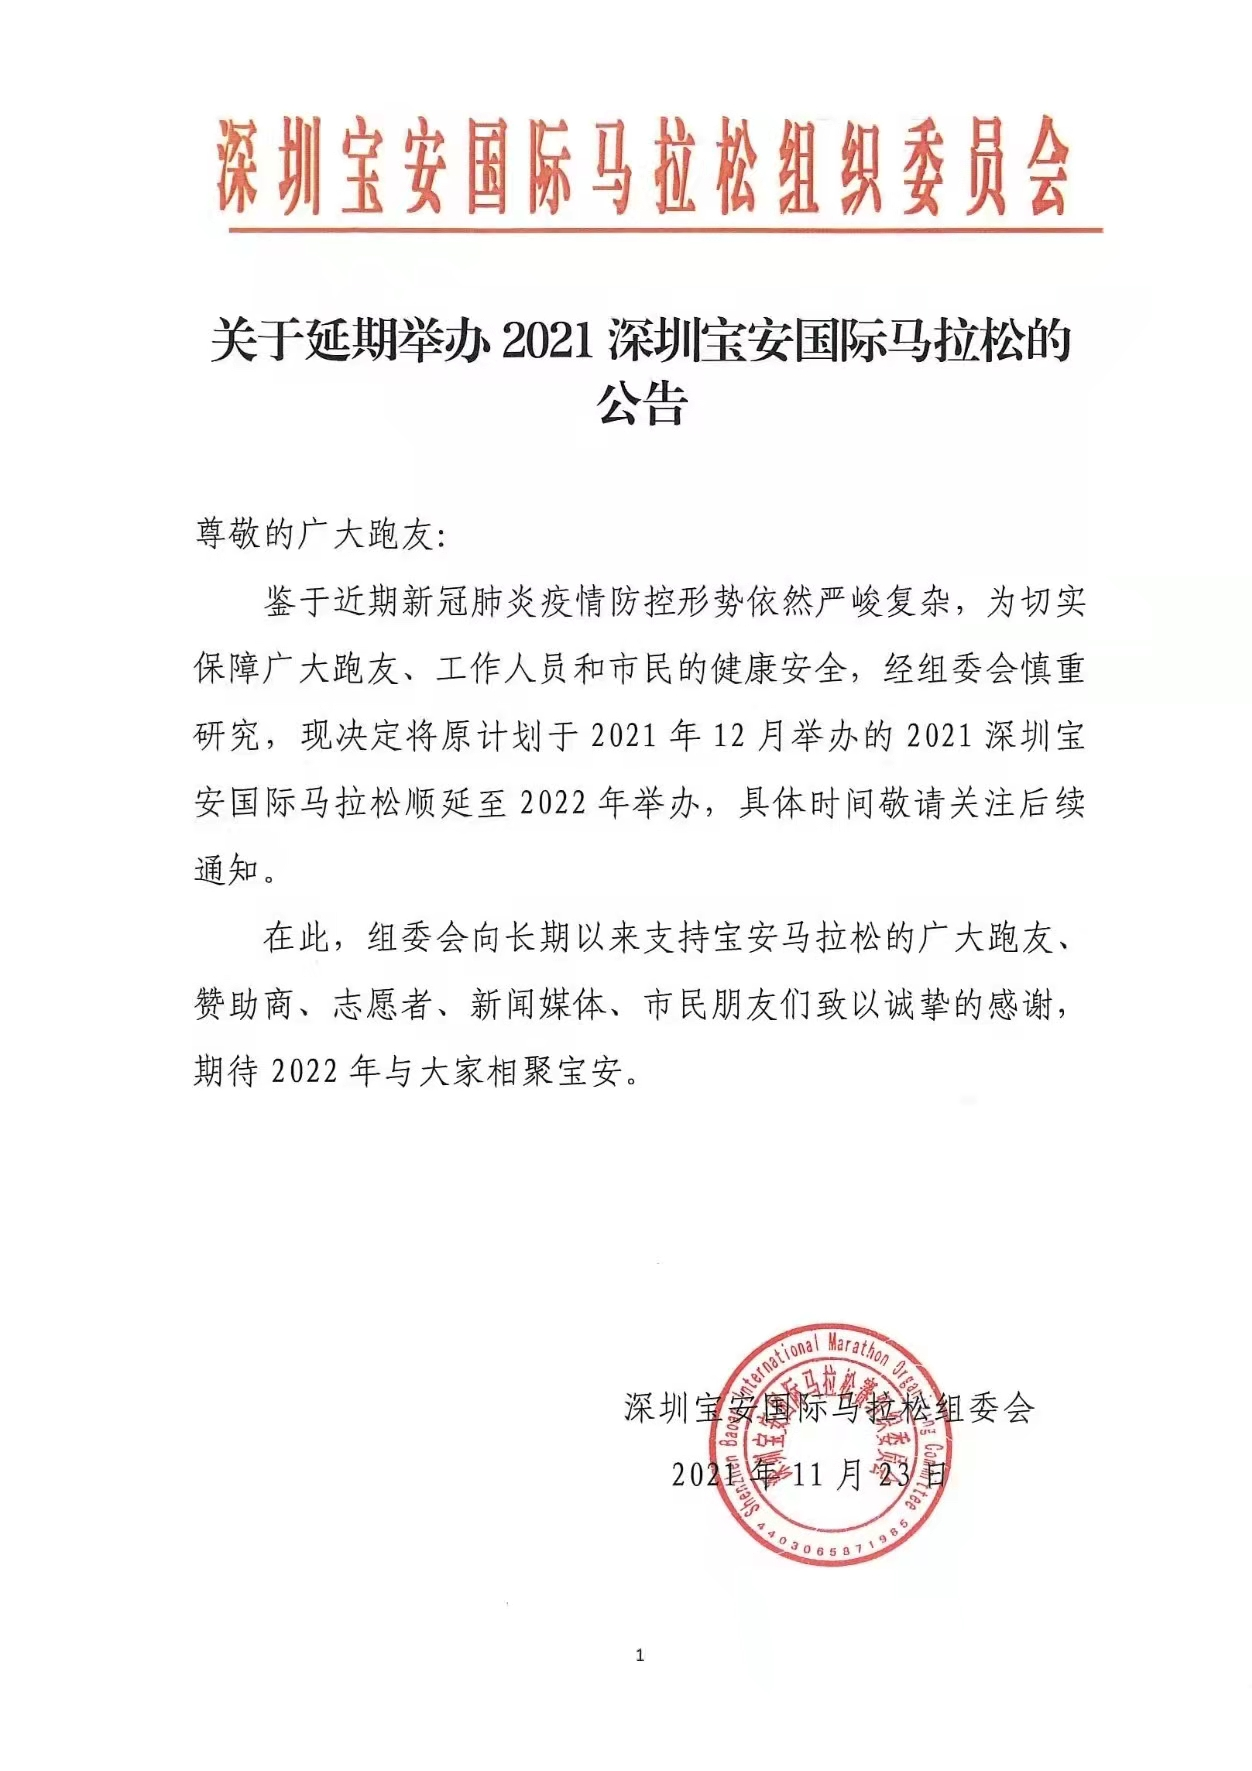 延期 深圳宝安国际马拉松最新通知 顺延至22年举行